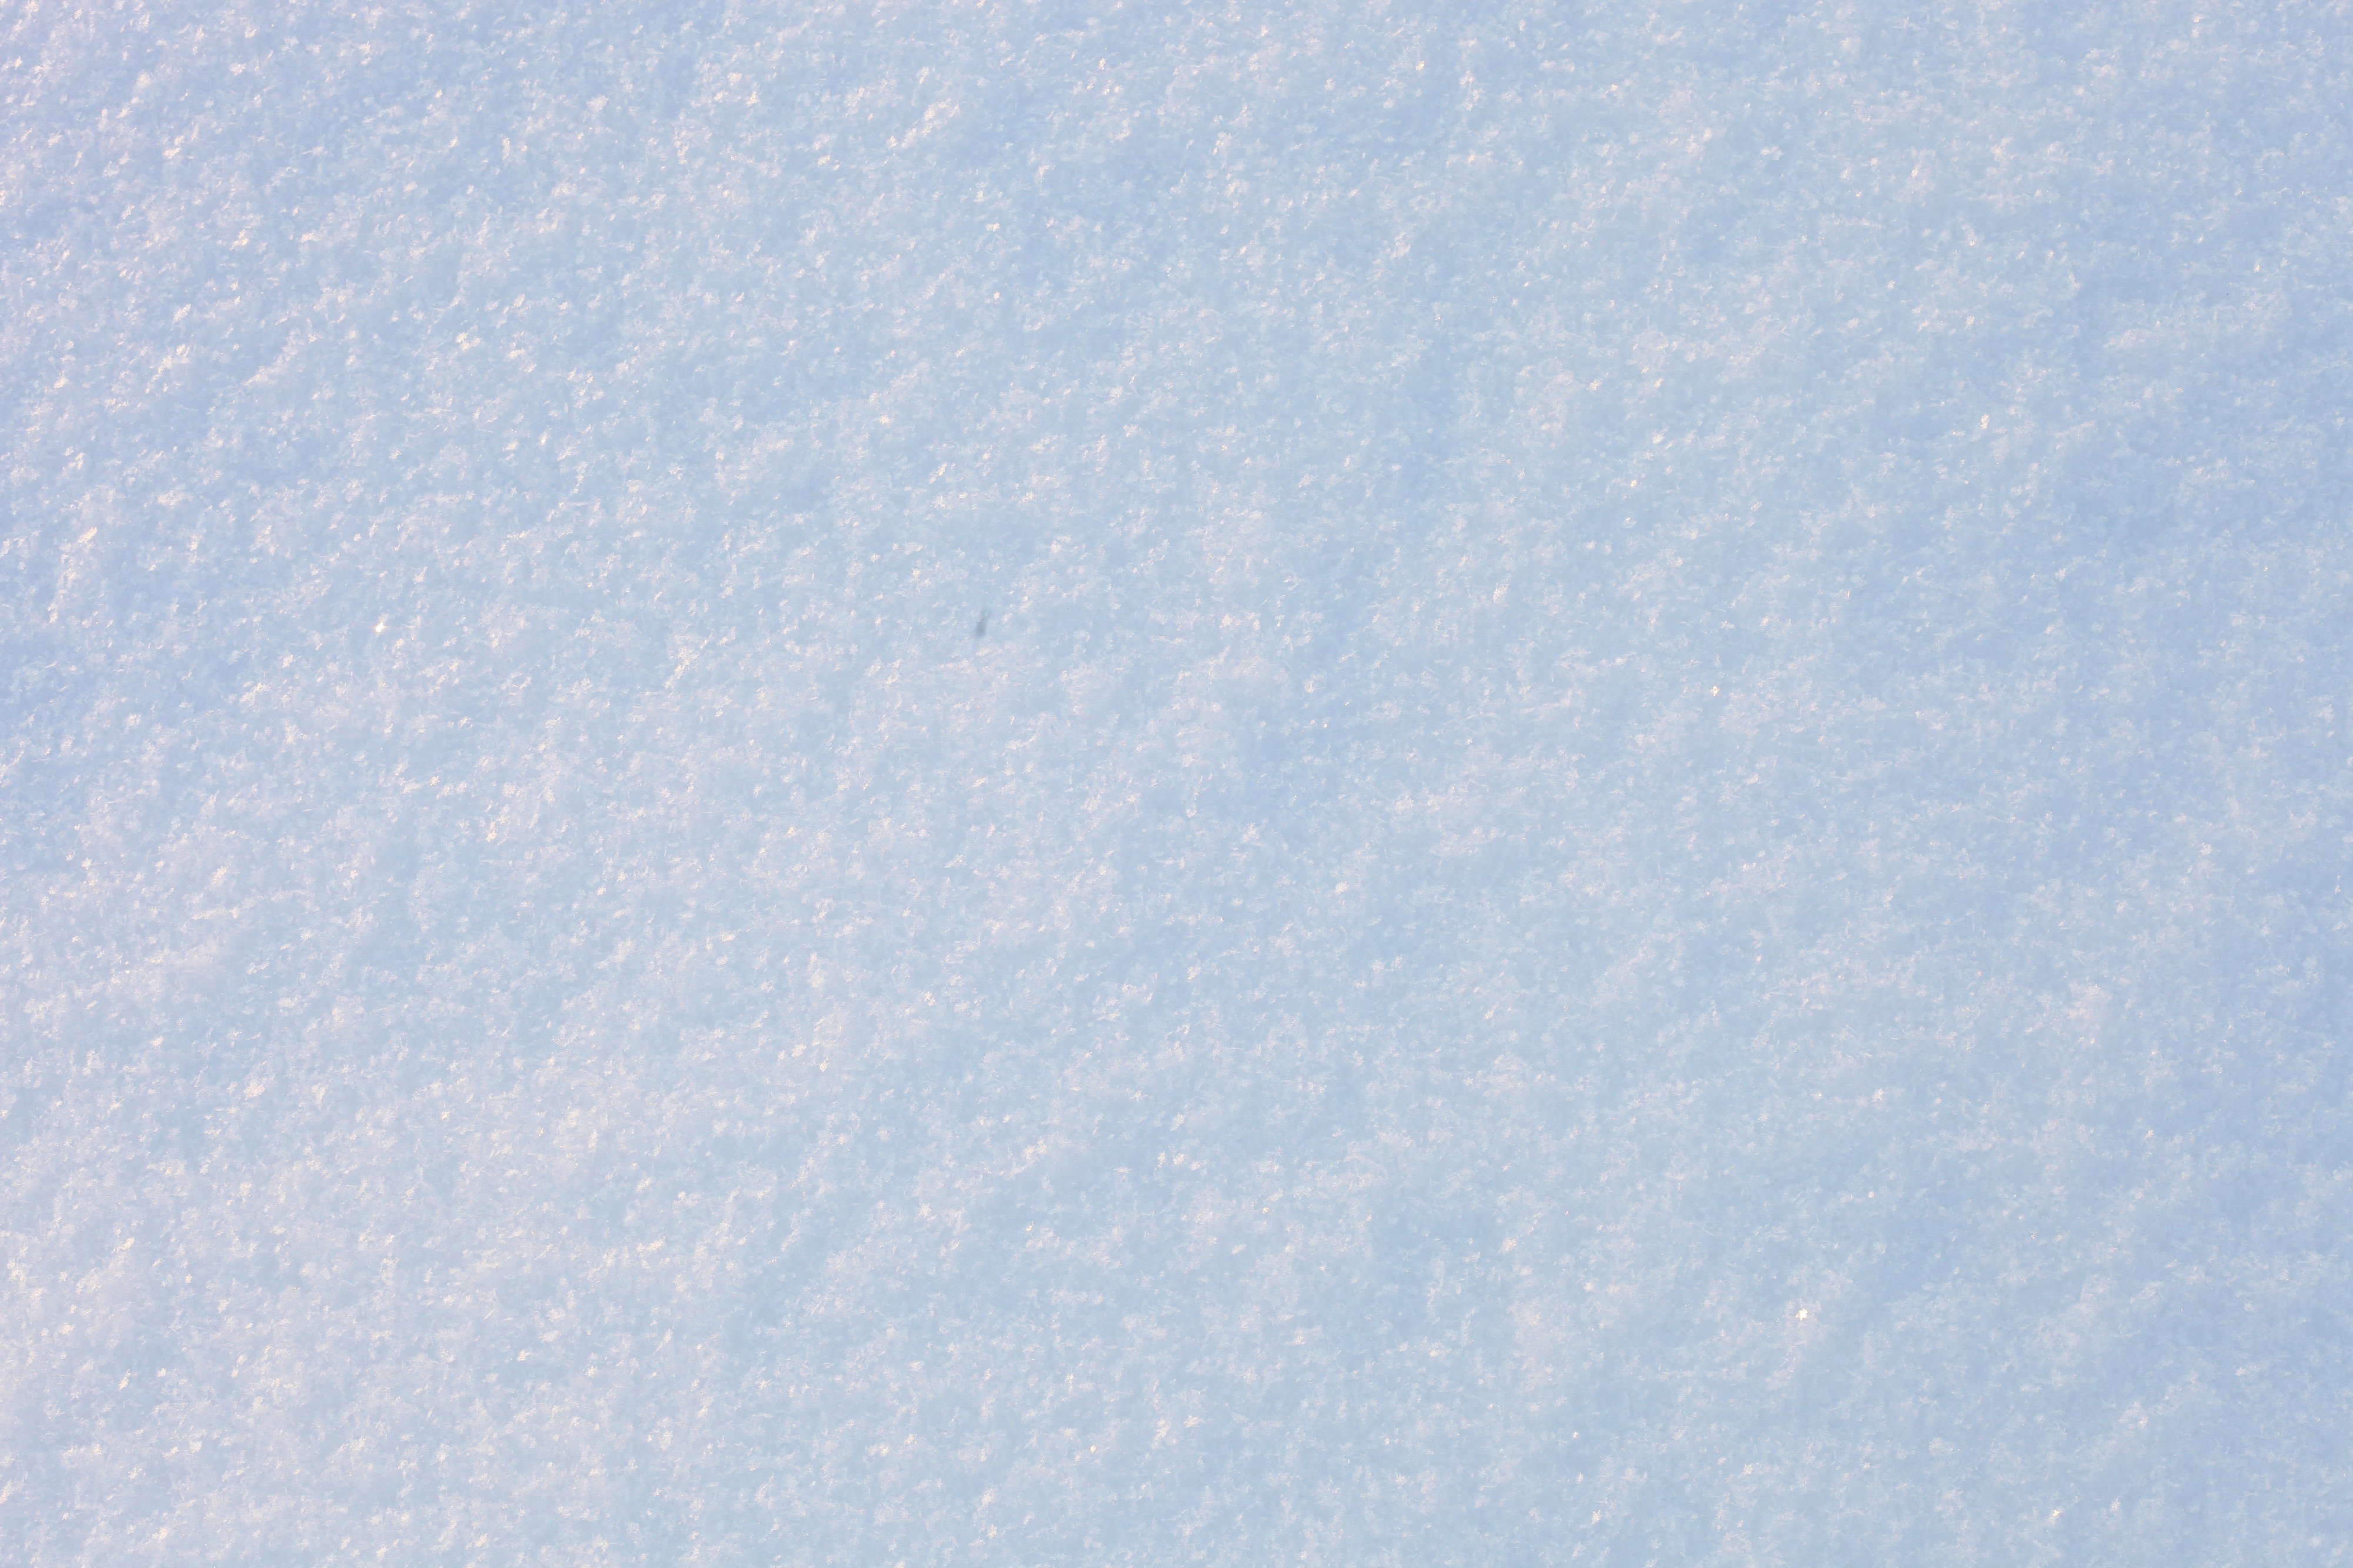 God's creation: plain snow, December 2012, photo 14